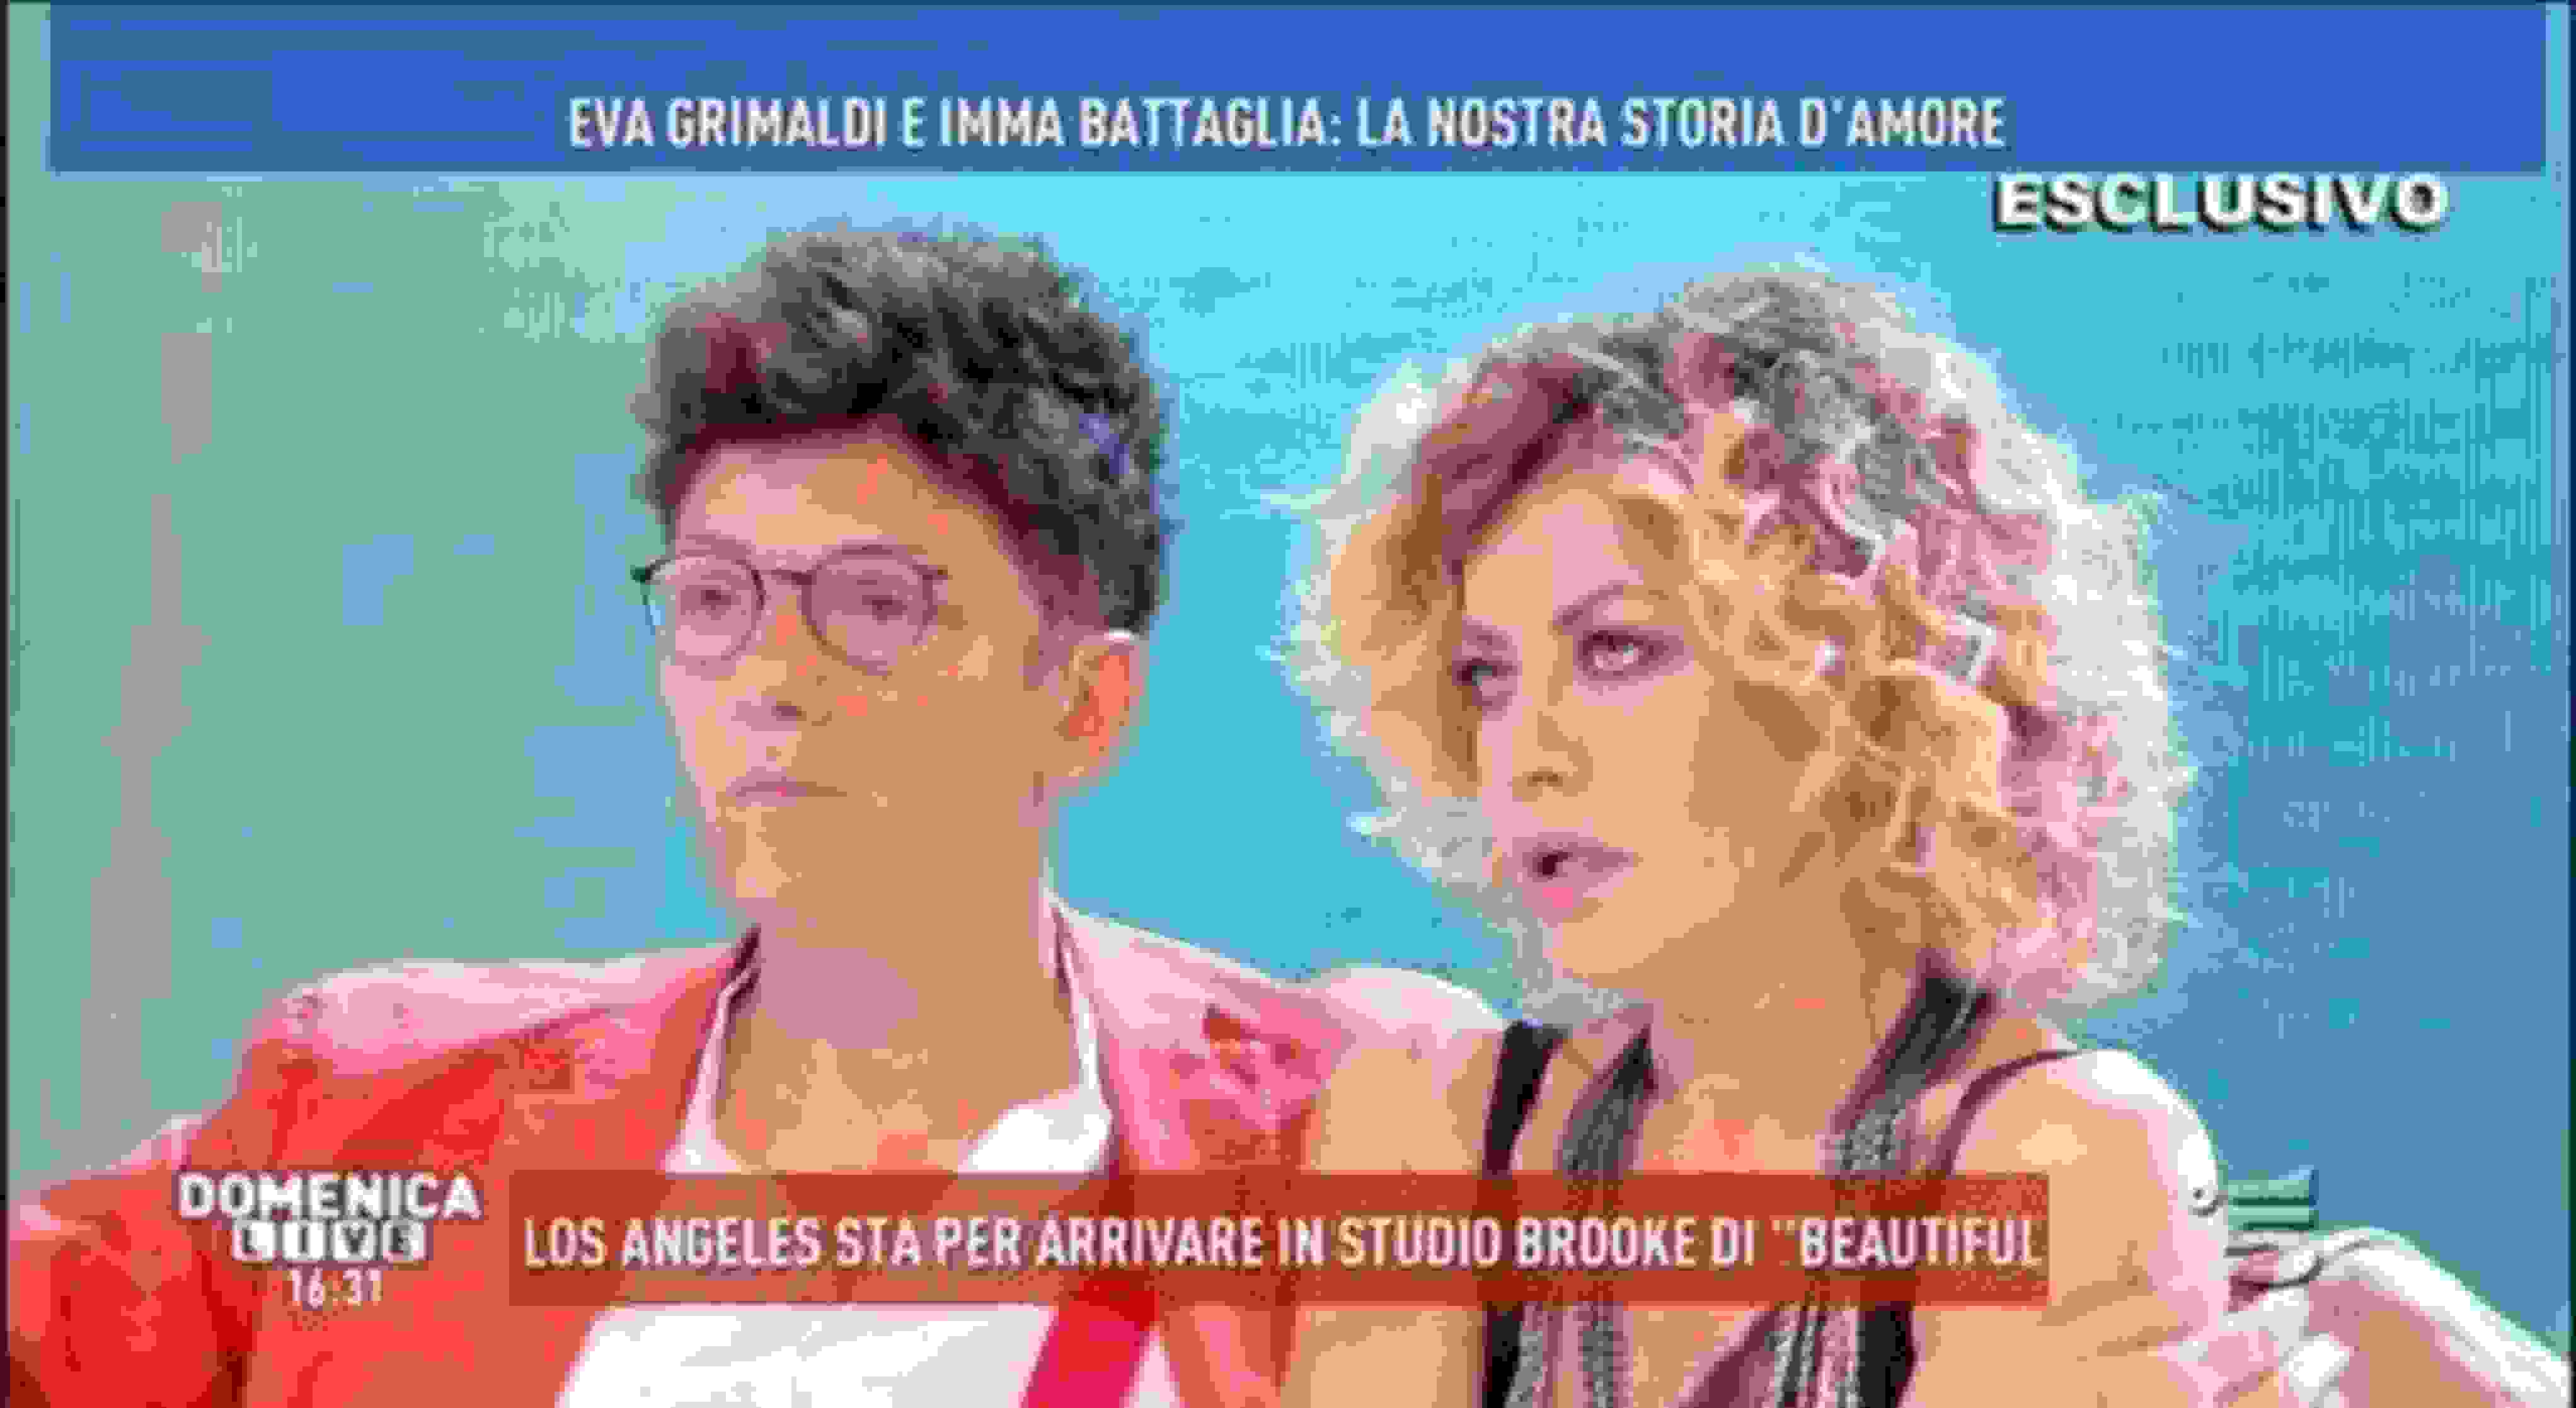 Unione Civile Eva Grimaldi Imma Battaglia: coming out, matrimonio